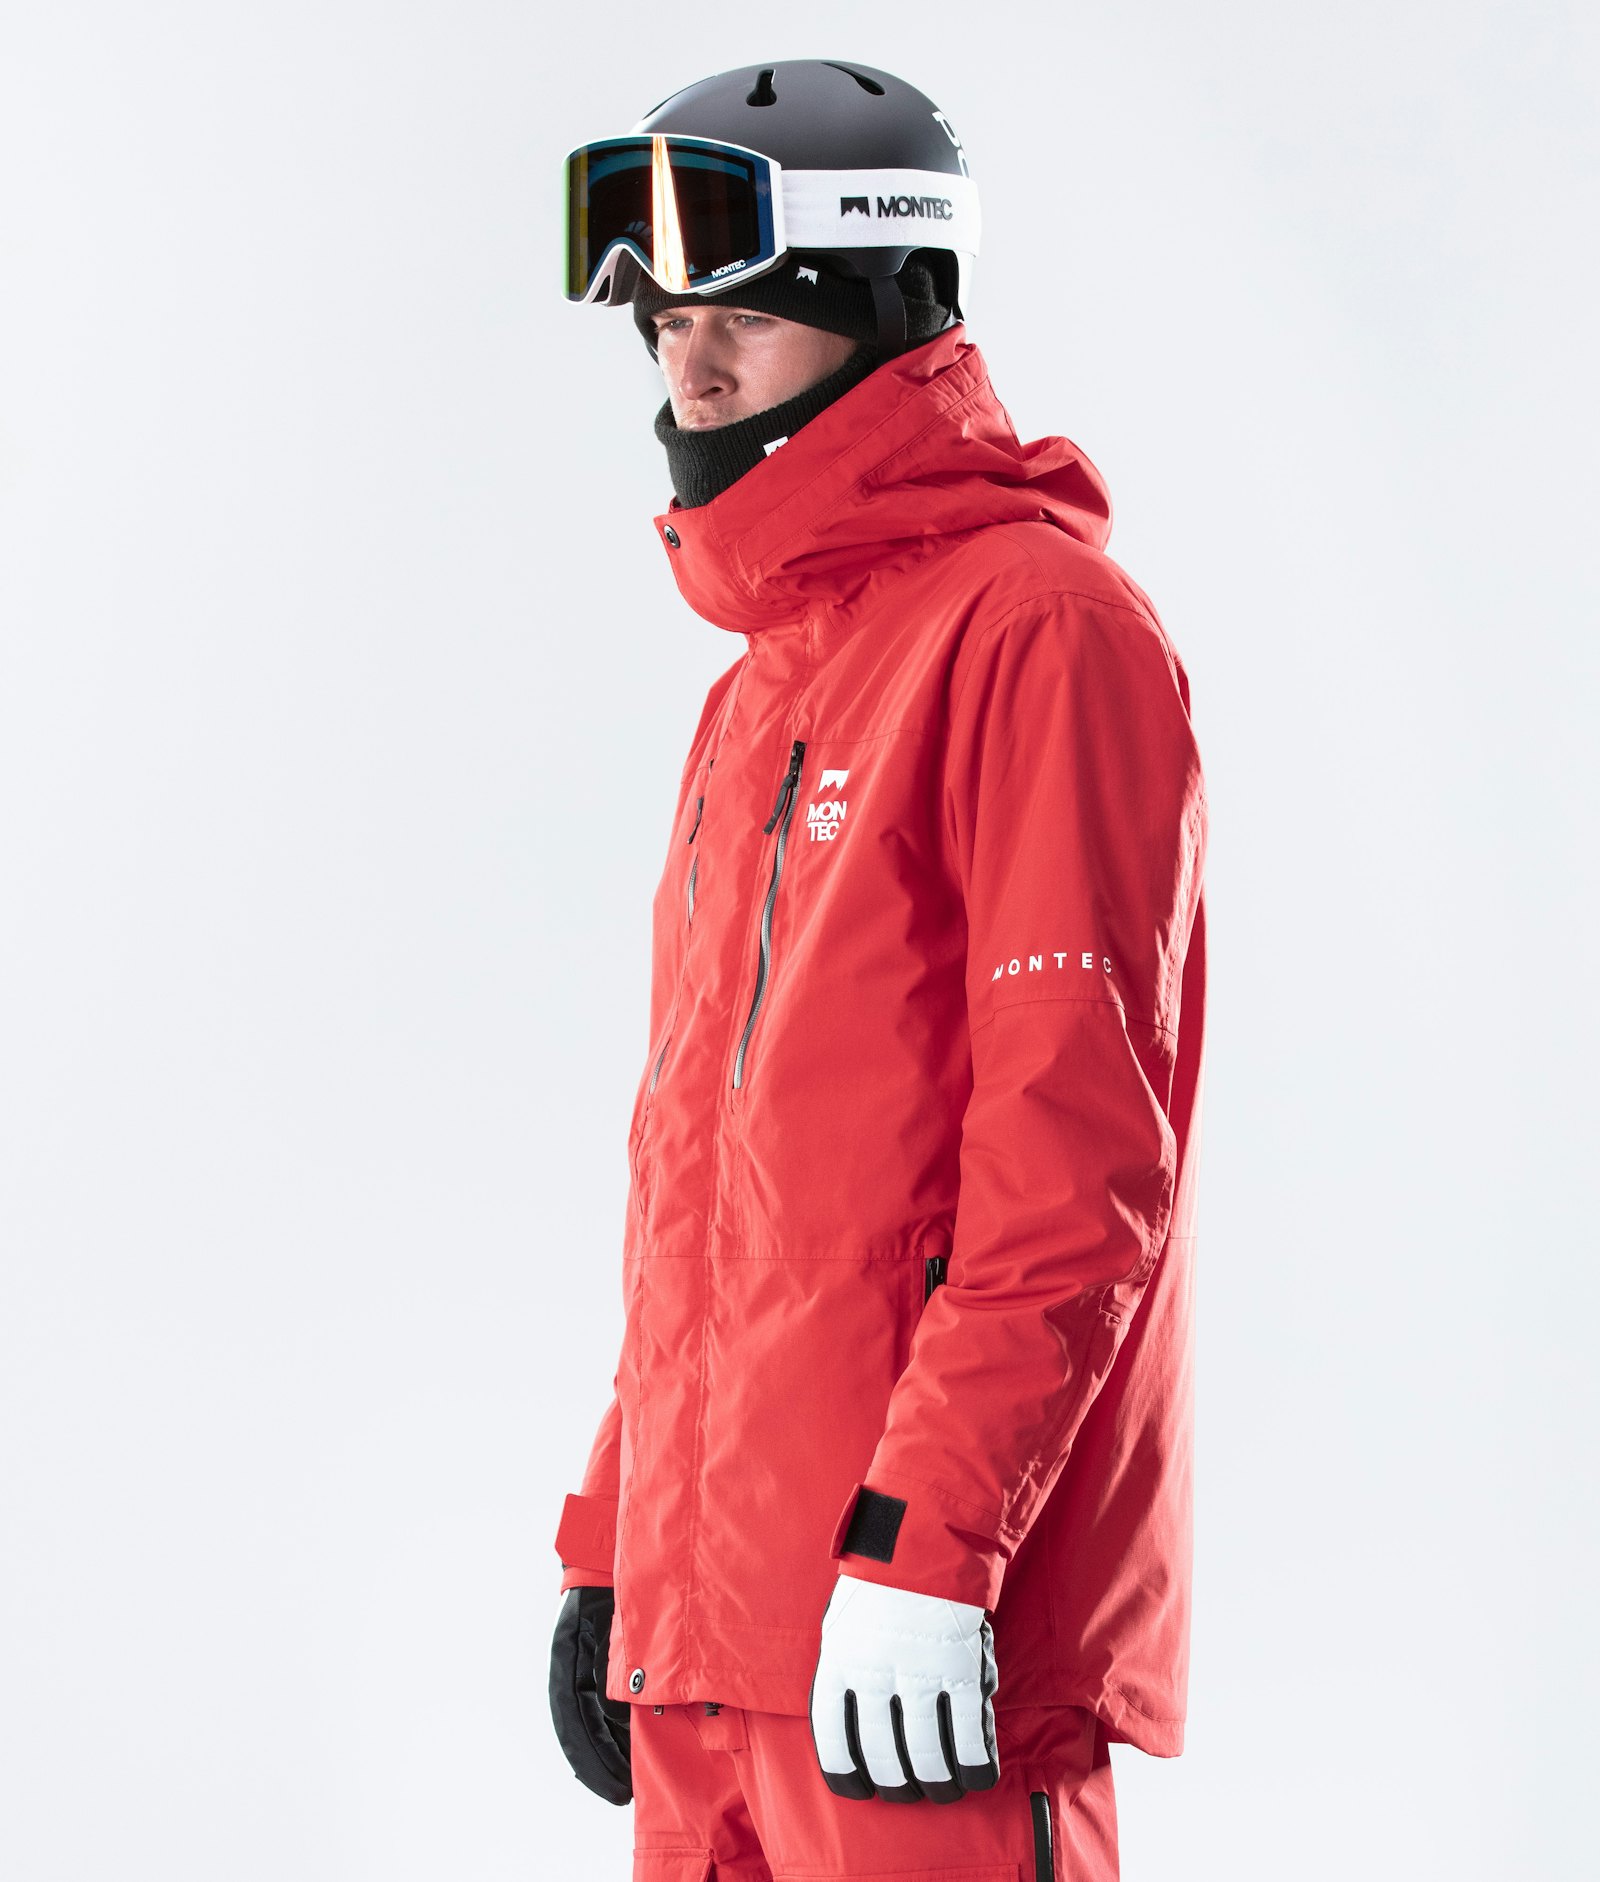 Fawk 2020 Veste Snowboard Homme Red